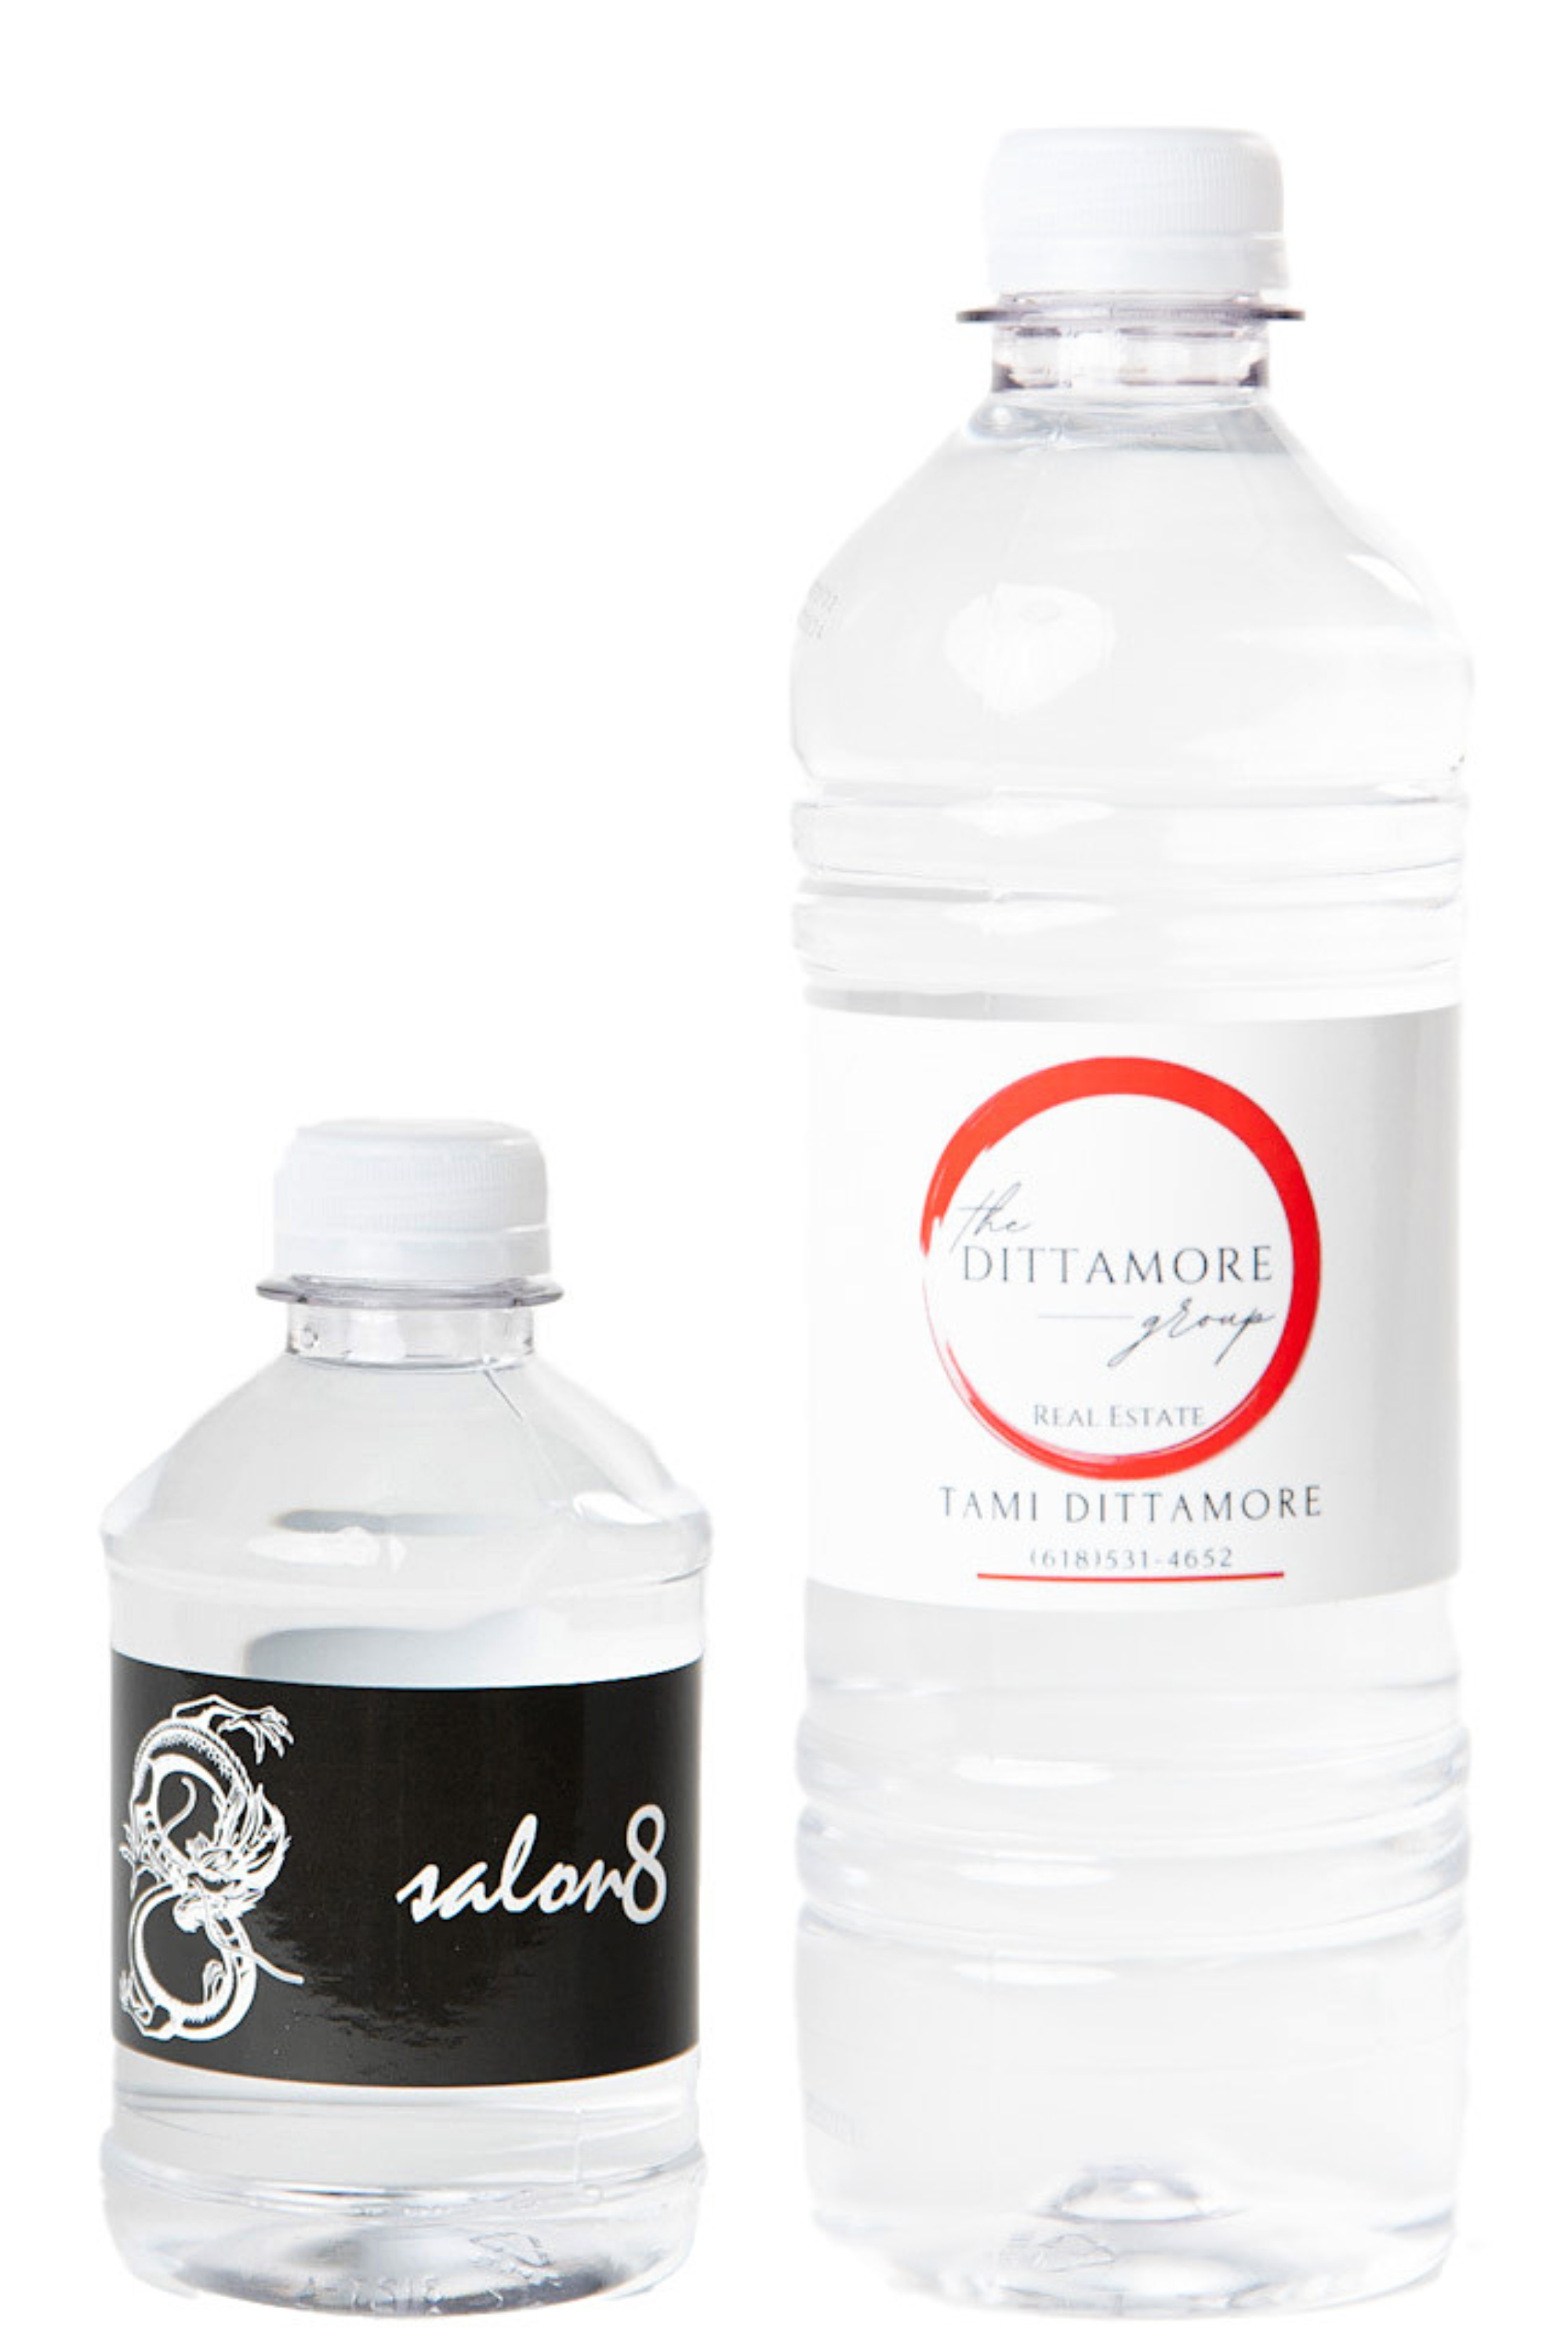 Yonder .75L Water Bottle Clear - Monograms Plus Cullman